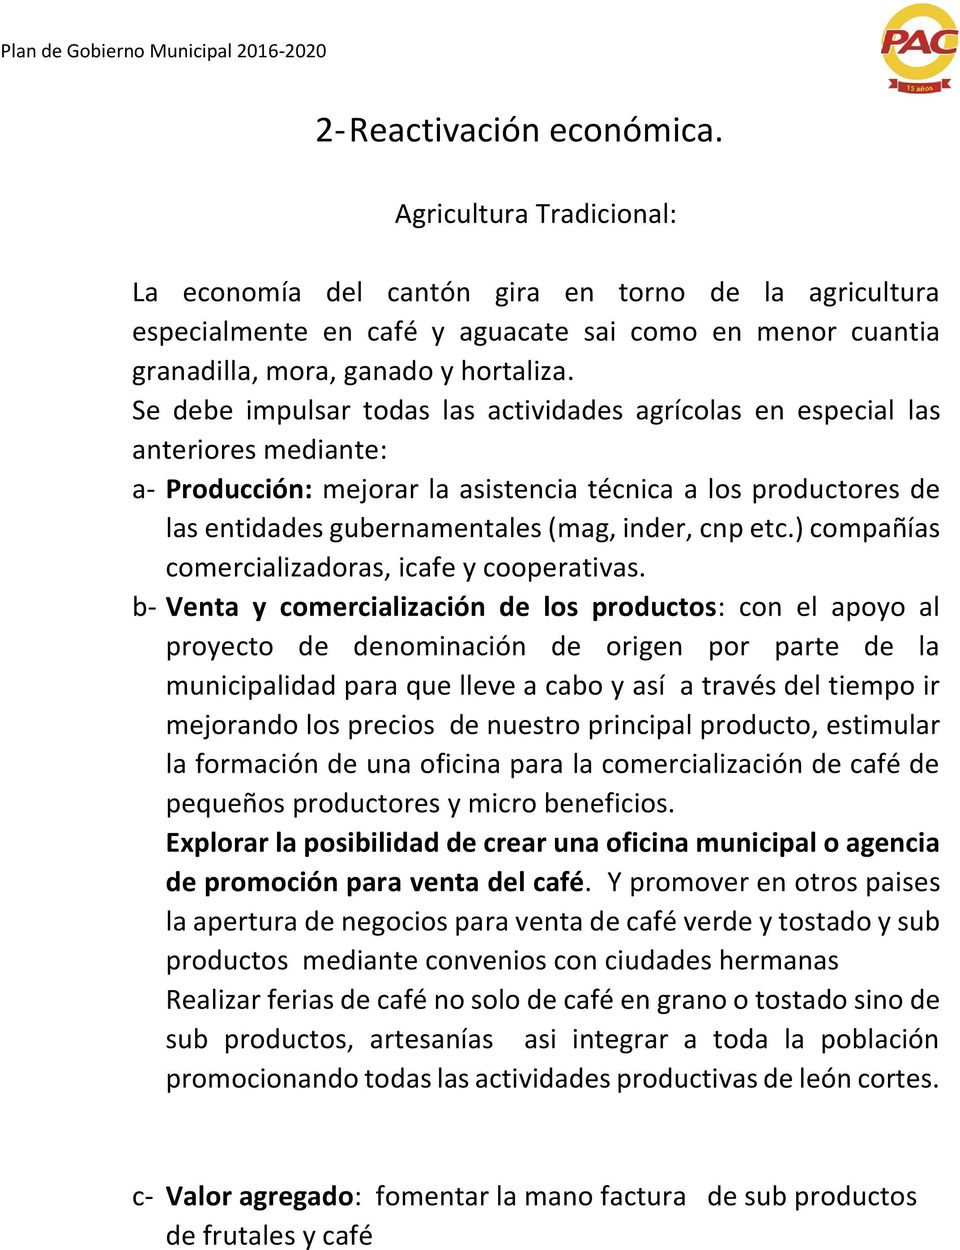 Se debe impulsar todas las actividades agrícolas en especial las anteriores mediante: a- Producción: mejorar la asistencia técnica a los productores de las entidades gubernamentales (mag, inder, cnp